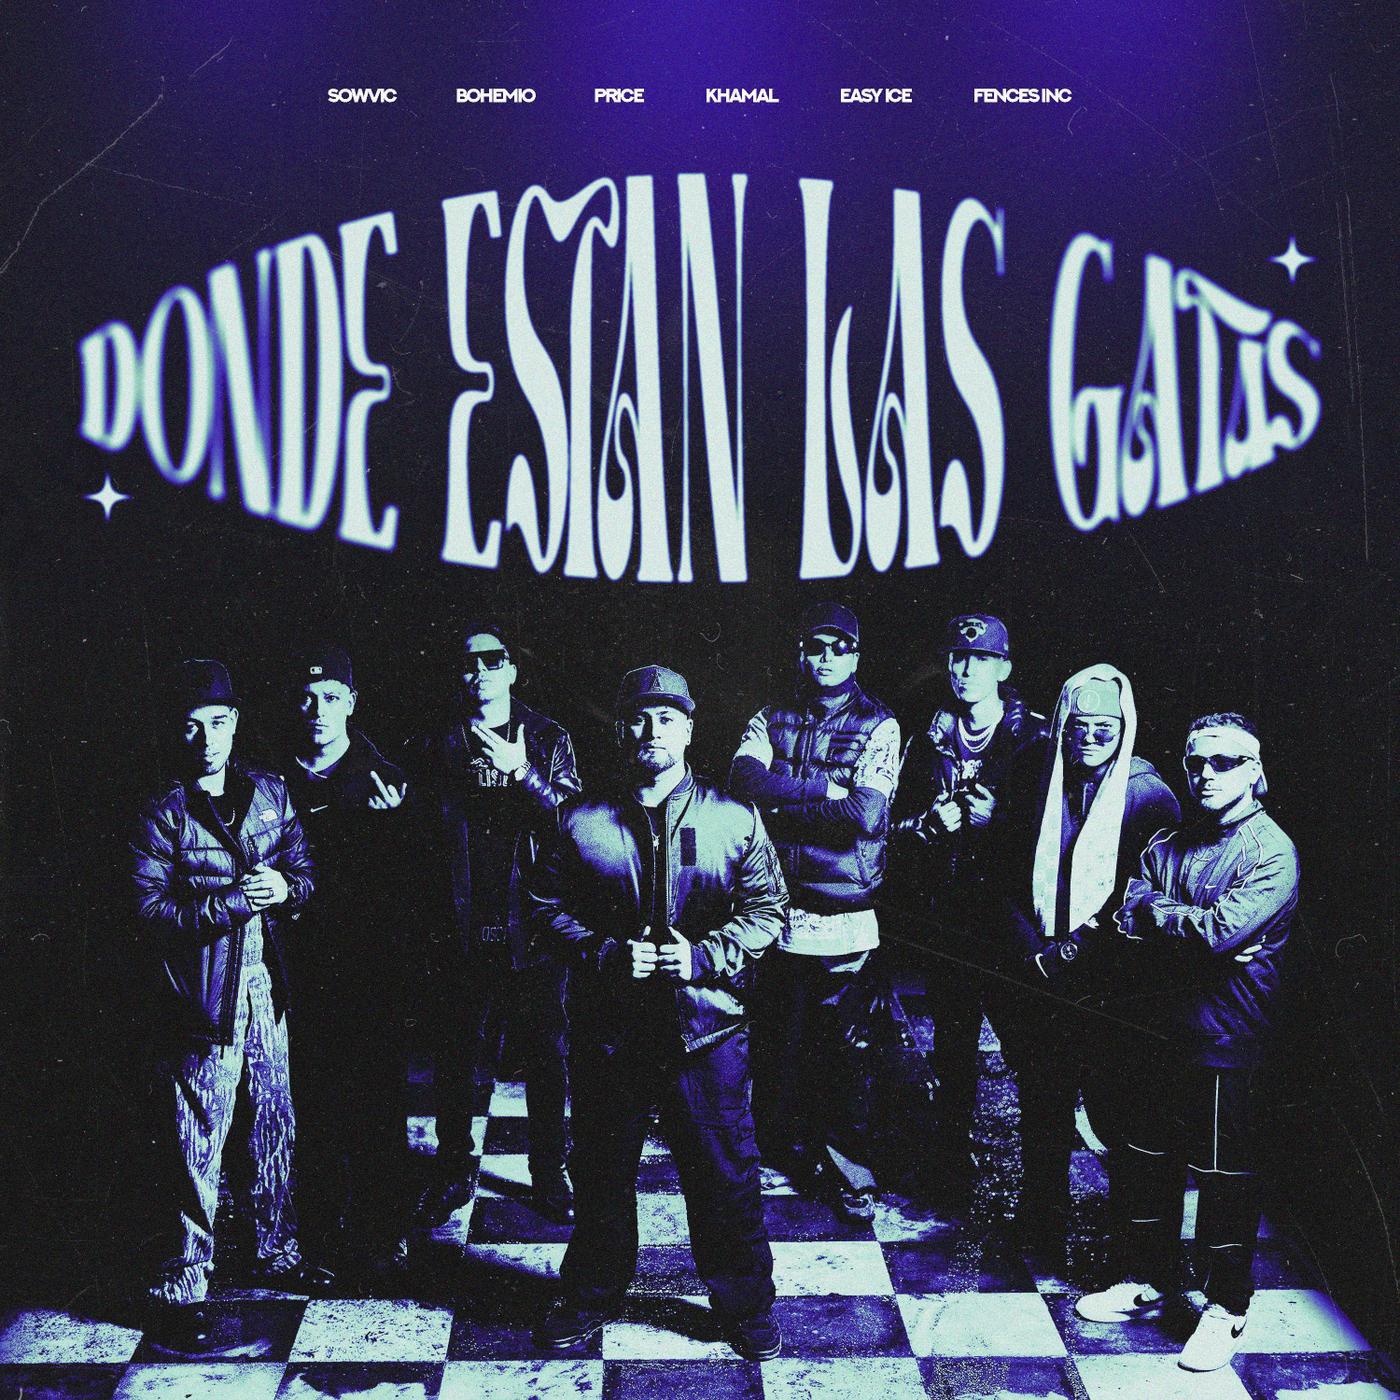 Sowvic - Donde Están las Gatas (feat. Fences Inc & Price)